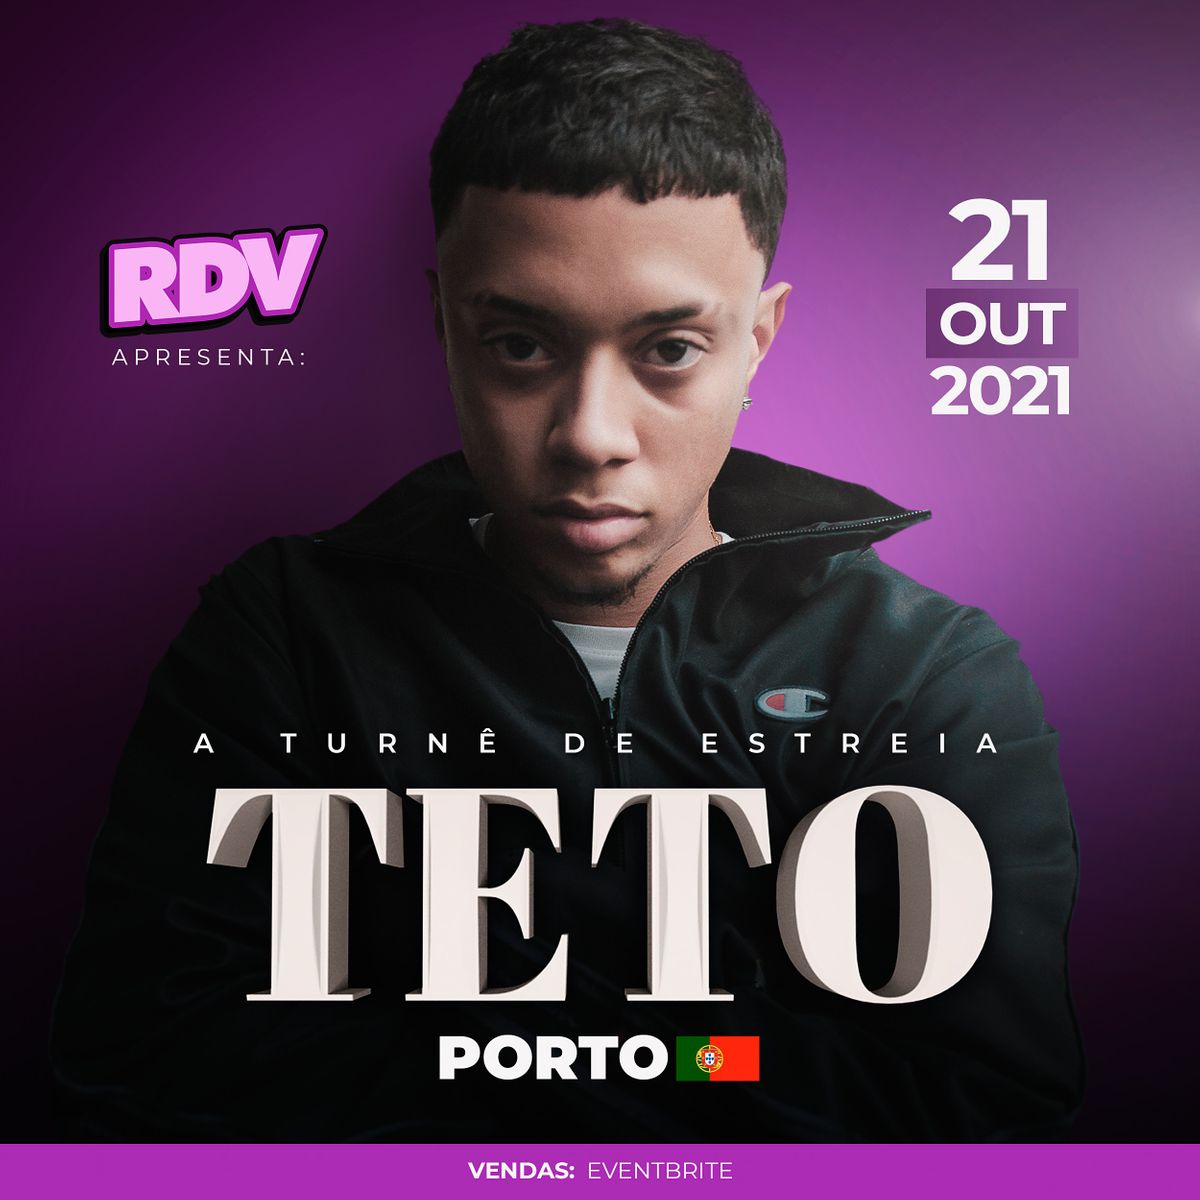 TETO NO HARD CLUB PORTO - RDV EURO